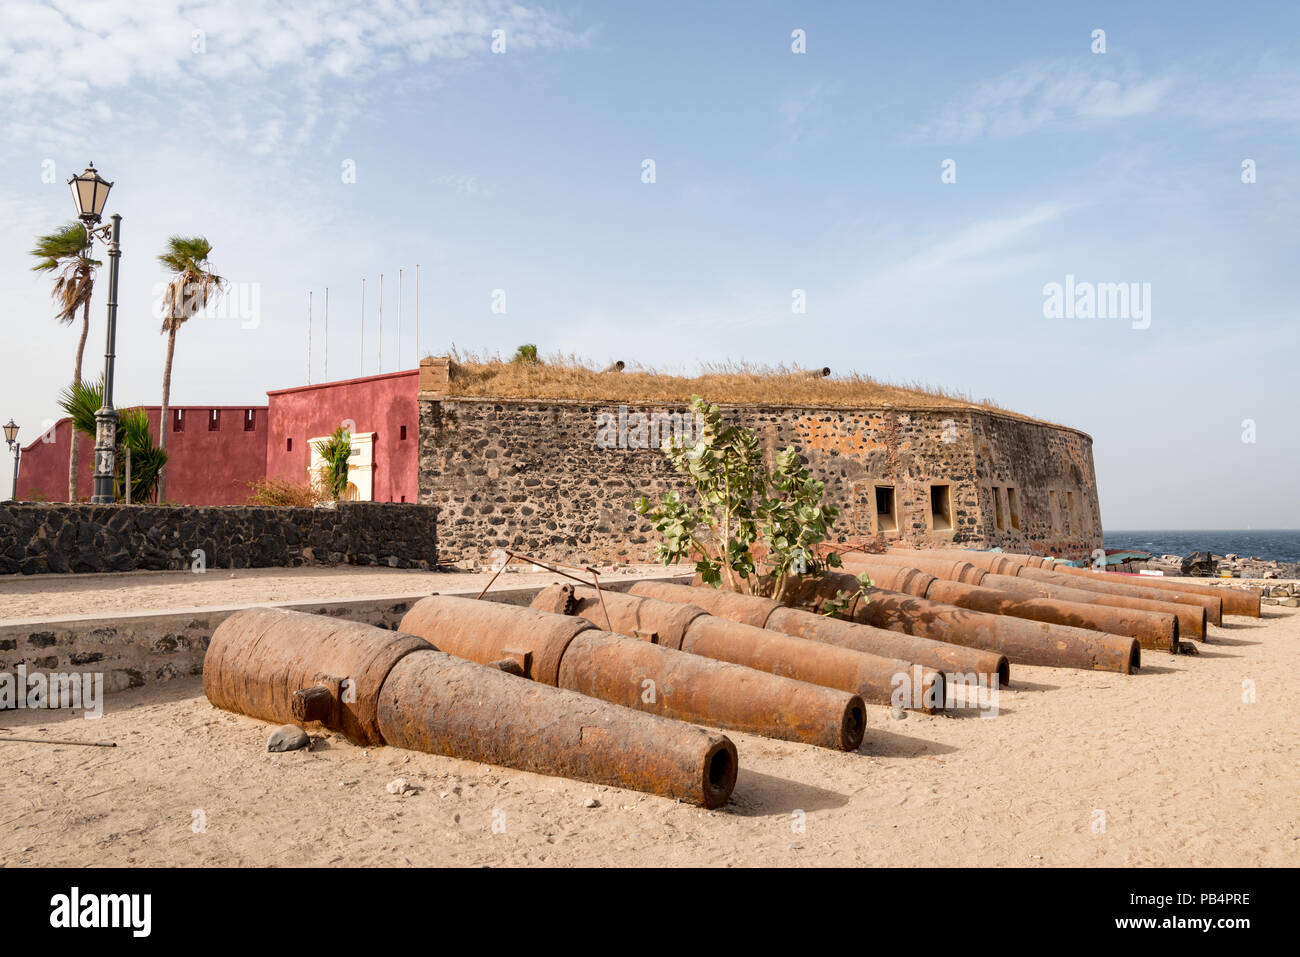 Le fort de l'île de Gorée, Dakar, Sénégal Banque D'Images